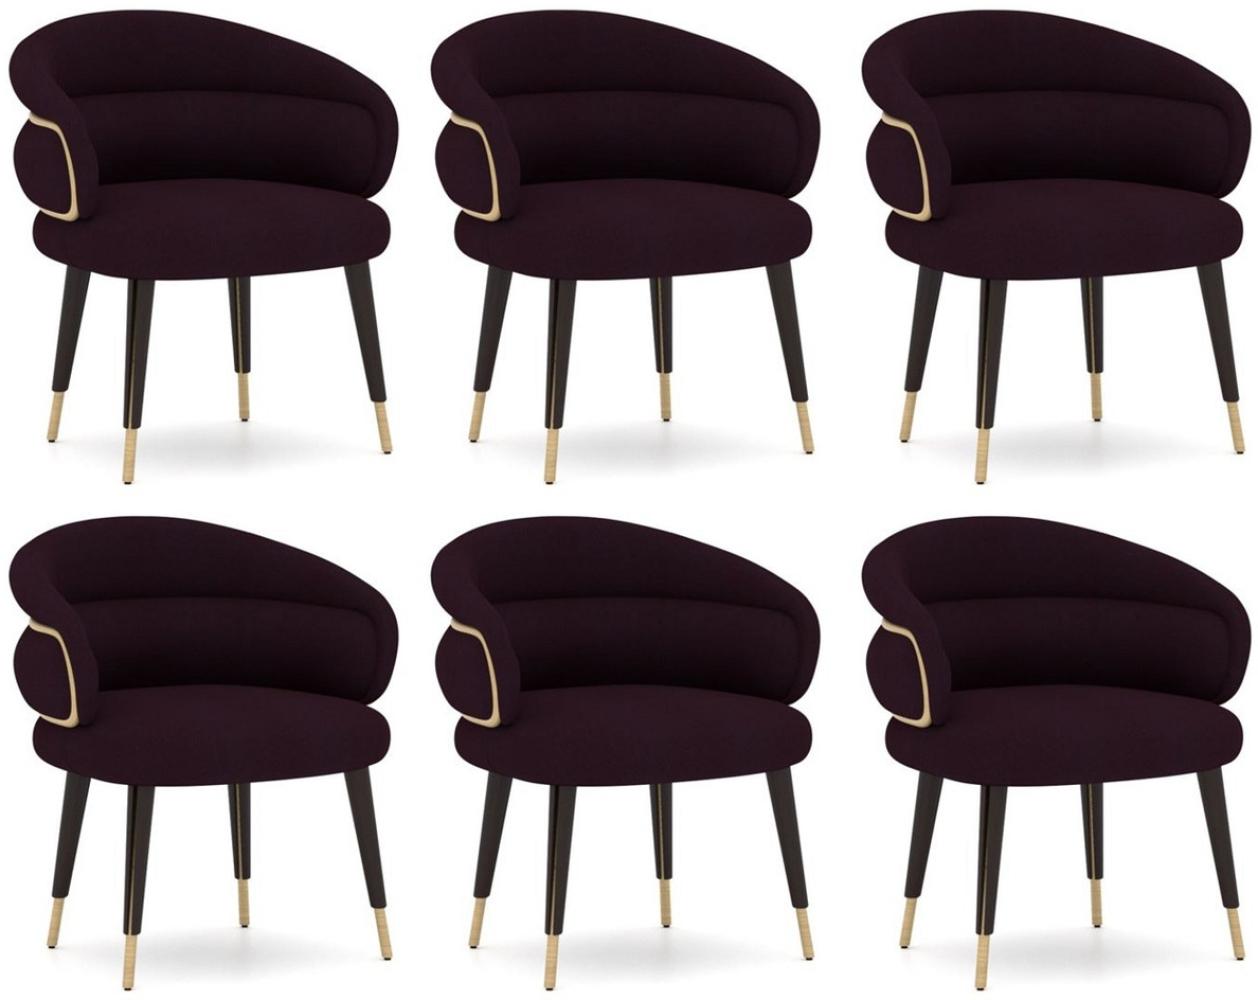 Casa Padrino Luxus Esszimmer Stuhl 6er Set Lila / Schwarz / Beige - Küchen Stühle mit Armlehnen - Esszimmer Möbel - Restaurant Möbel - Hotel Möbel - Luxus Möbel Bild 1